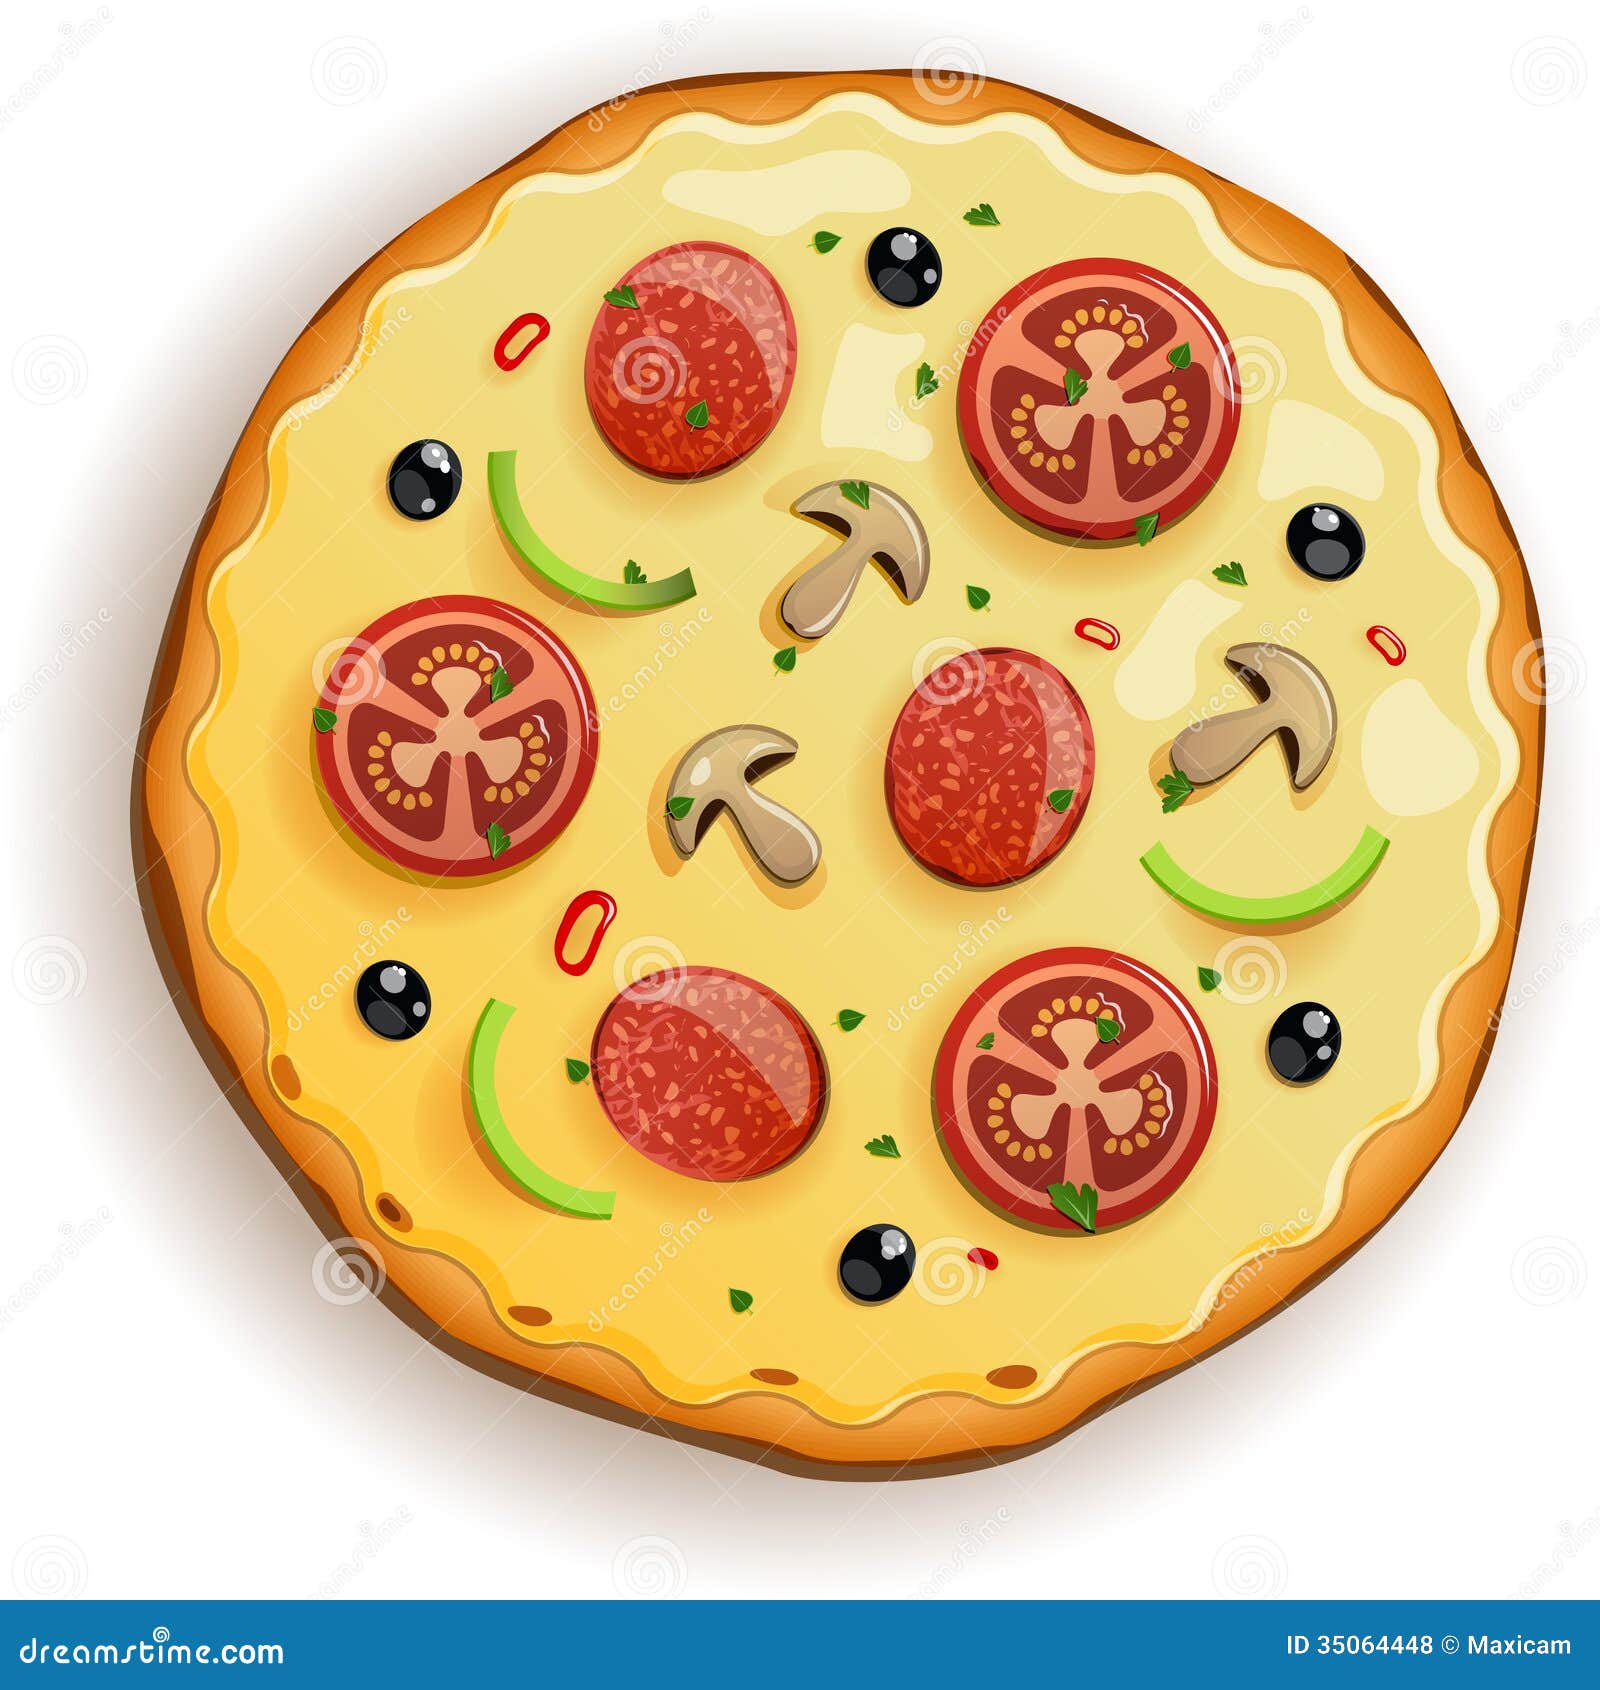 clip art images pizza - photo #46